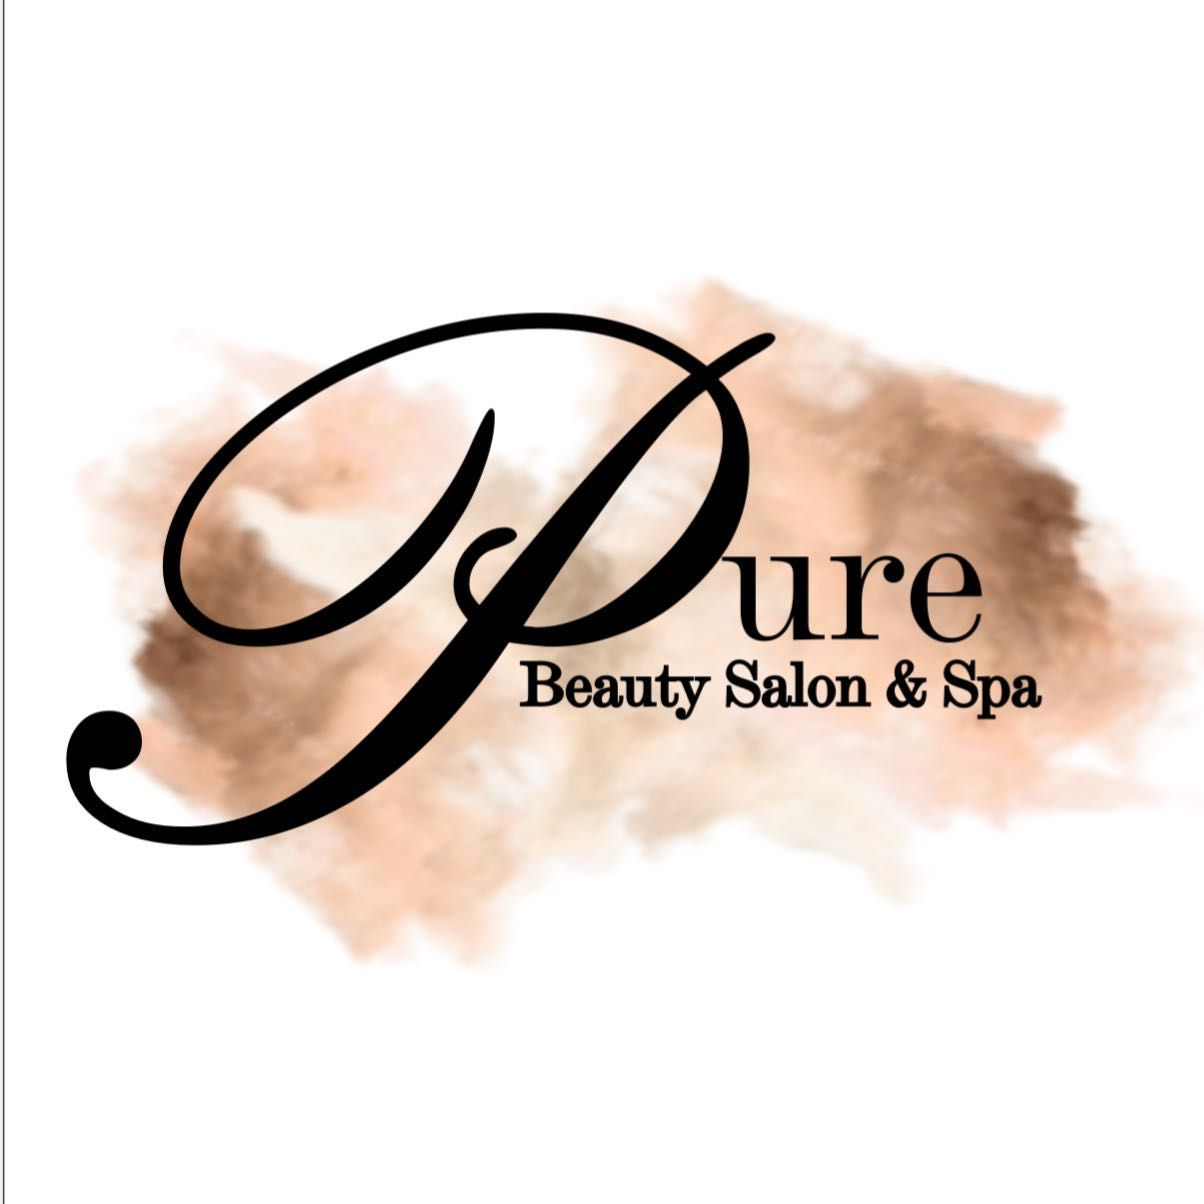 PURE beauty salon, Nici-Lené Accessories Gifts Decor, 105 Bloukrans St, Highveld, Shop 4, 0157, Centurion